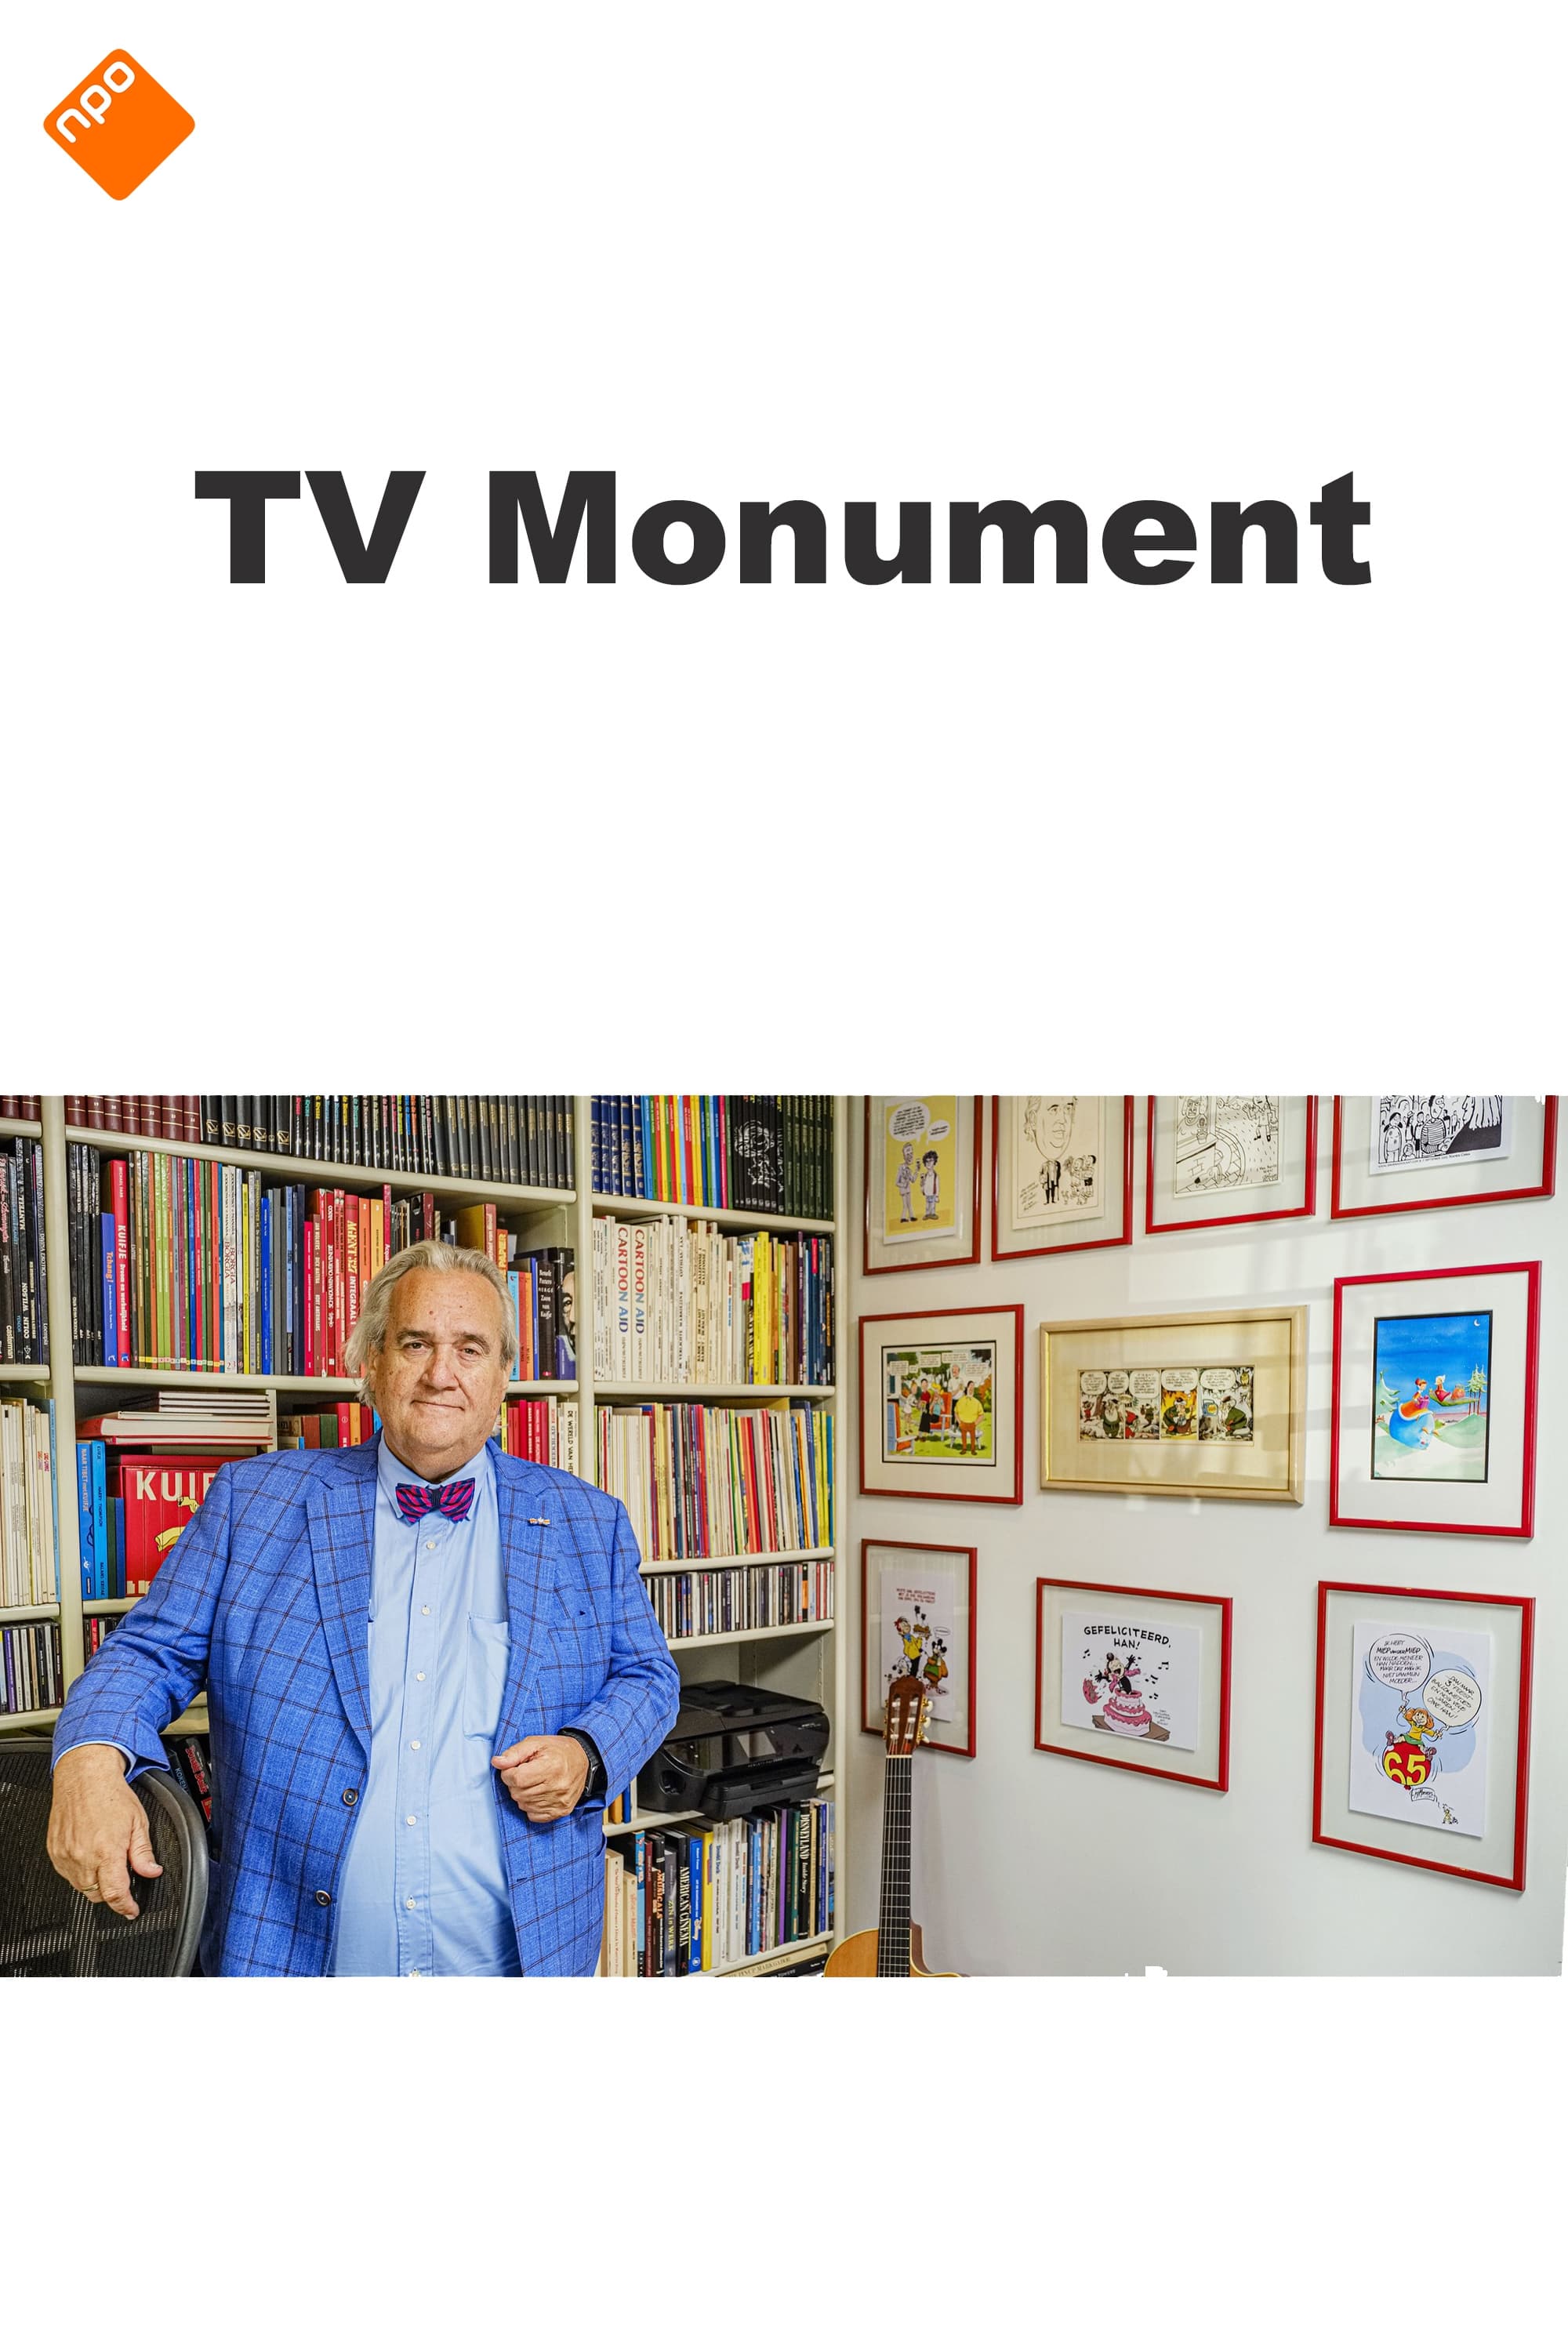 TV Monument